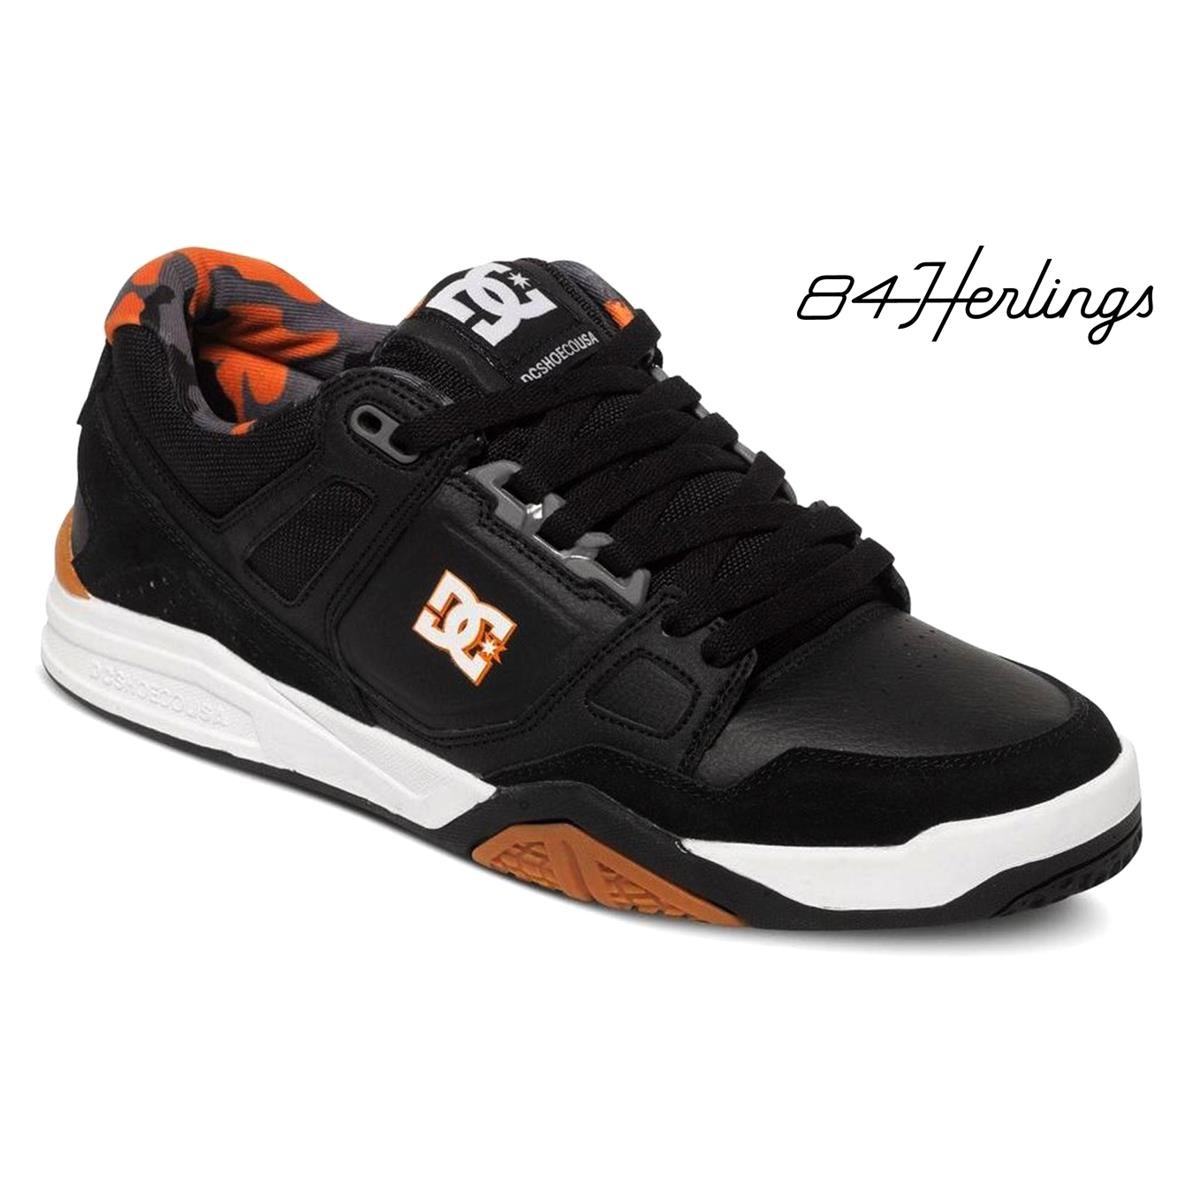 DC Shoes Stag 2 JH Black/Black/Orange - Jeffrey Herlings